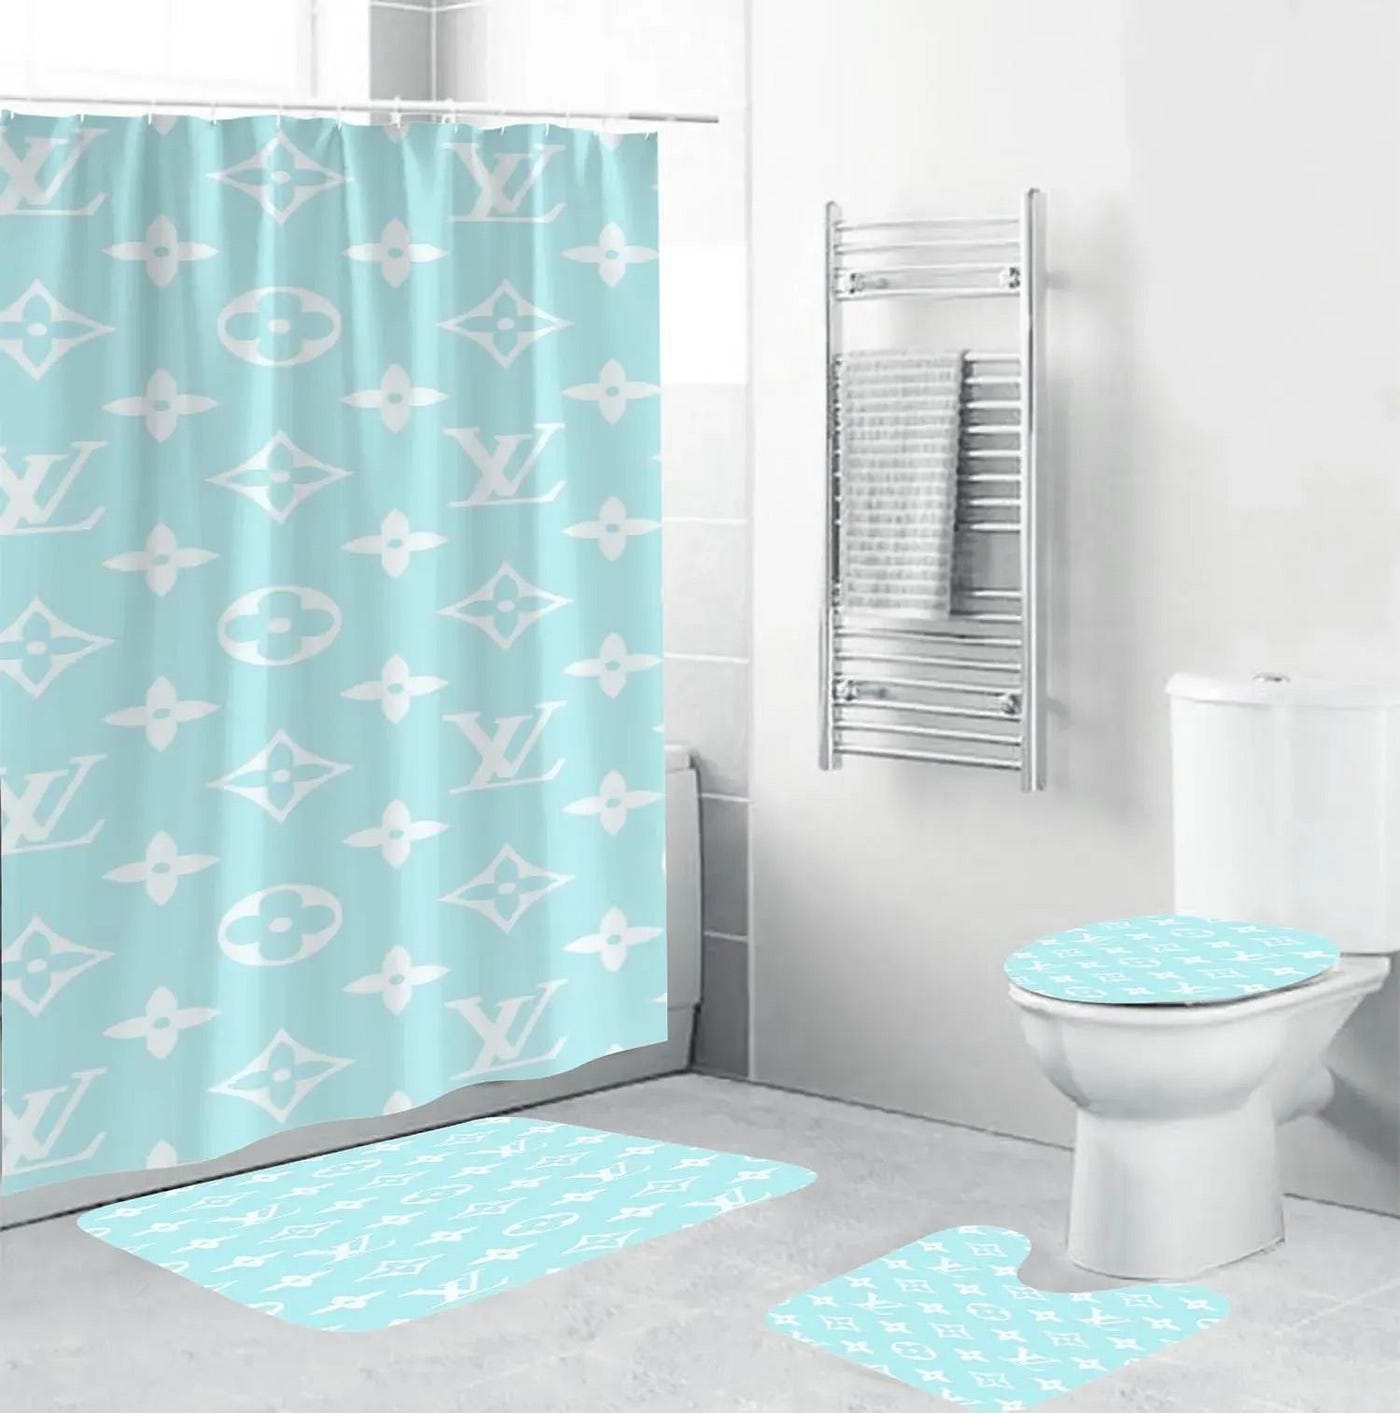 Louis Vuitton LV White Bathroom Set Luxury Shower Curtain Bath Rug